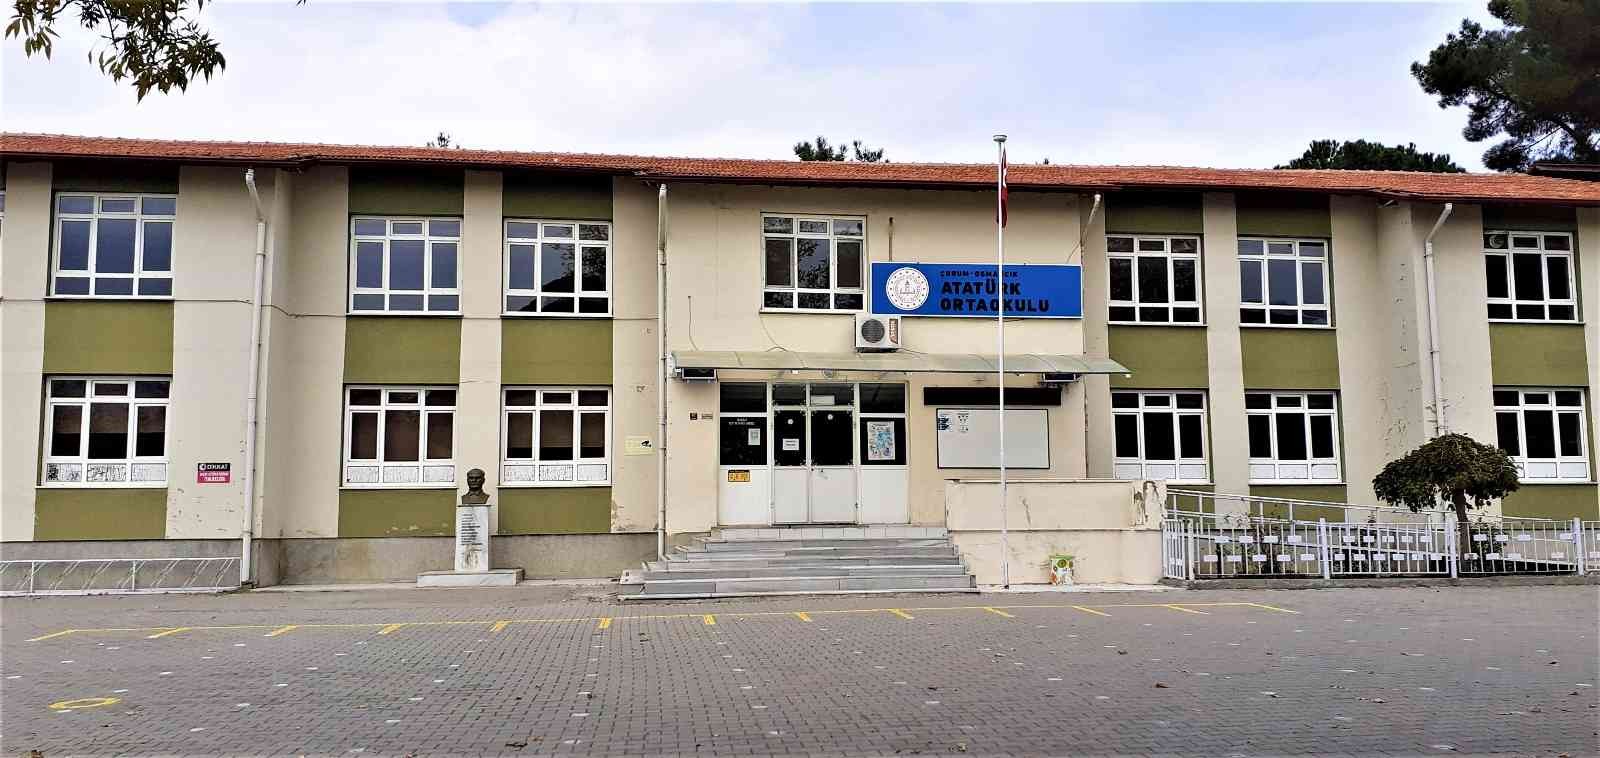 Atatürk Ortaokulu’nun yerine ticaret merkezi yapılacak #corum